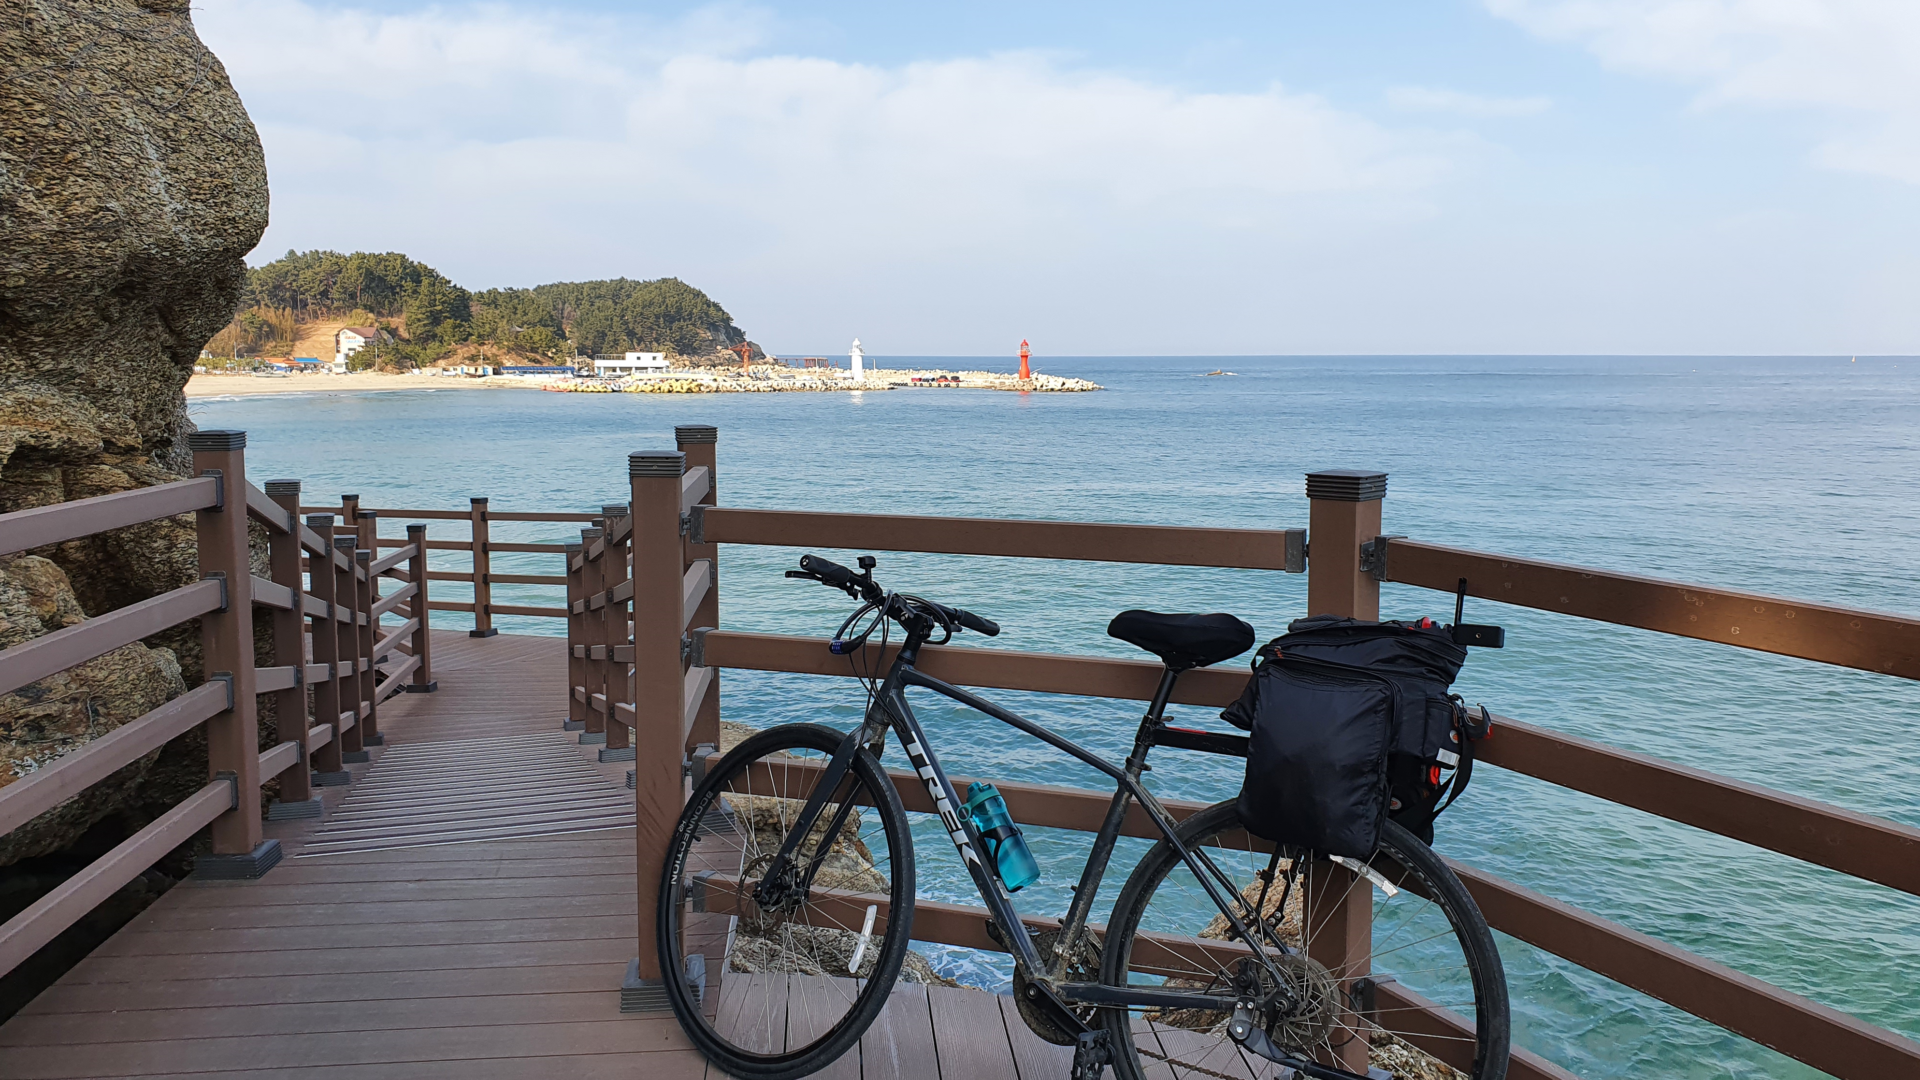 Korea East Coast Bike Path Cycling – Day 2